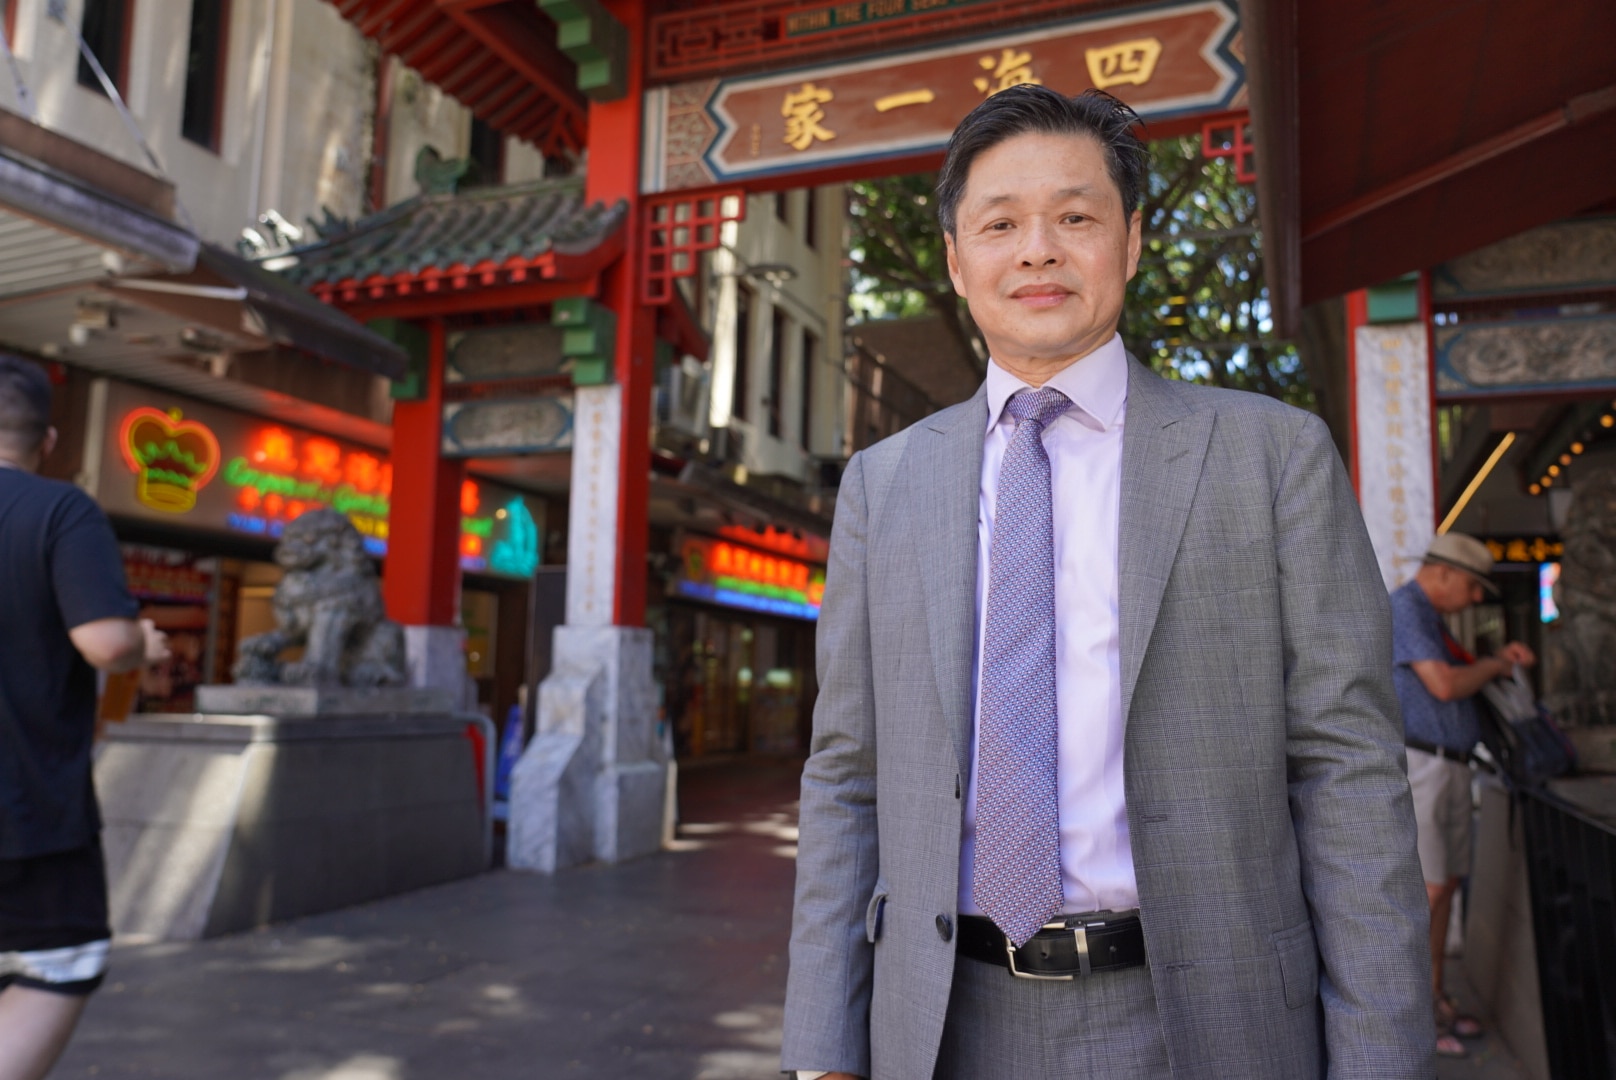 Un homme portant un costume gris, une cravate et une chemise lavande se tient devant un paifang chinois et des restaurants.